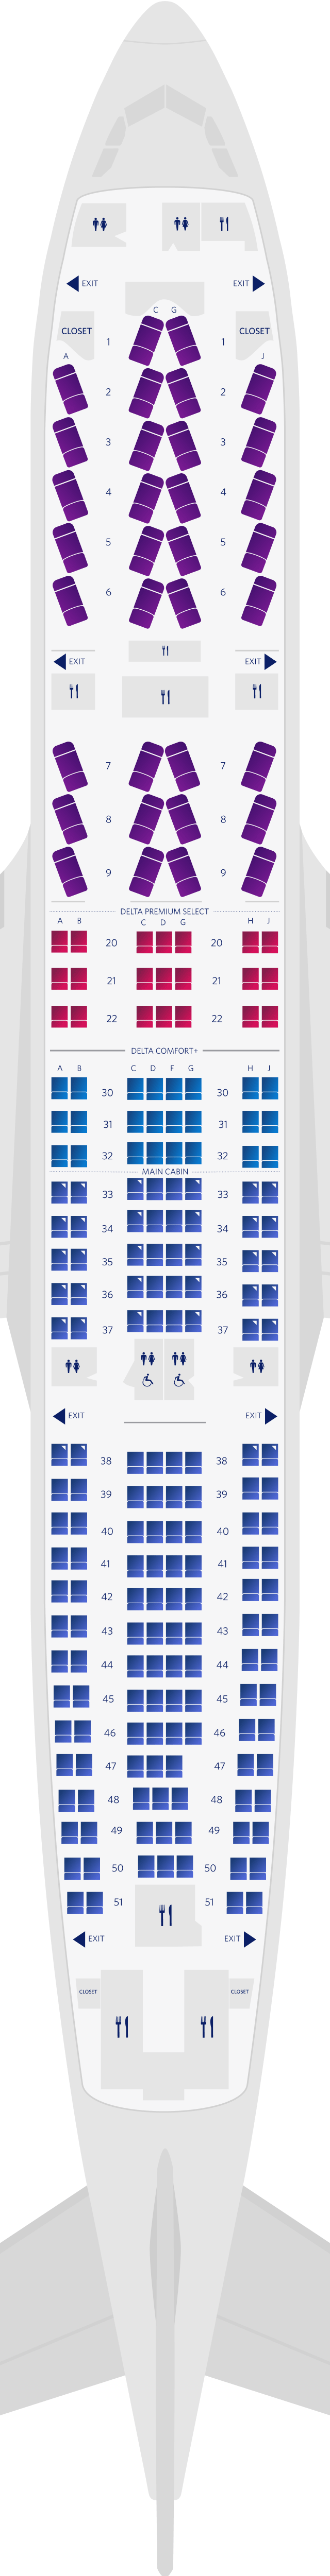 에어버스 A330-200 4-객실 좌석 배치도